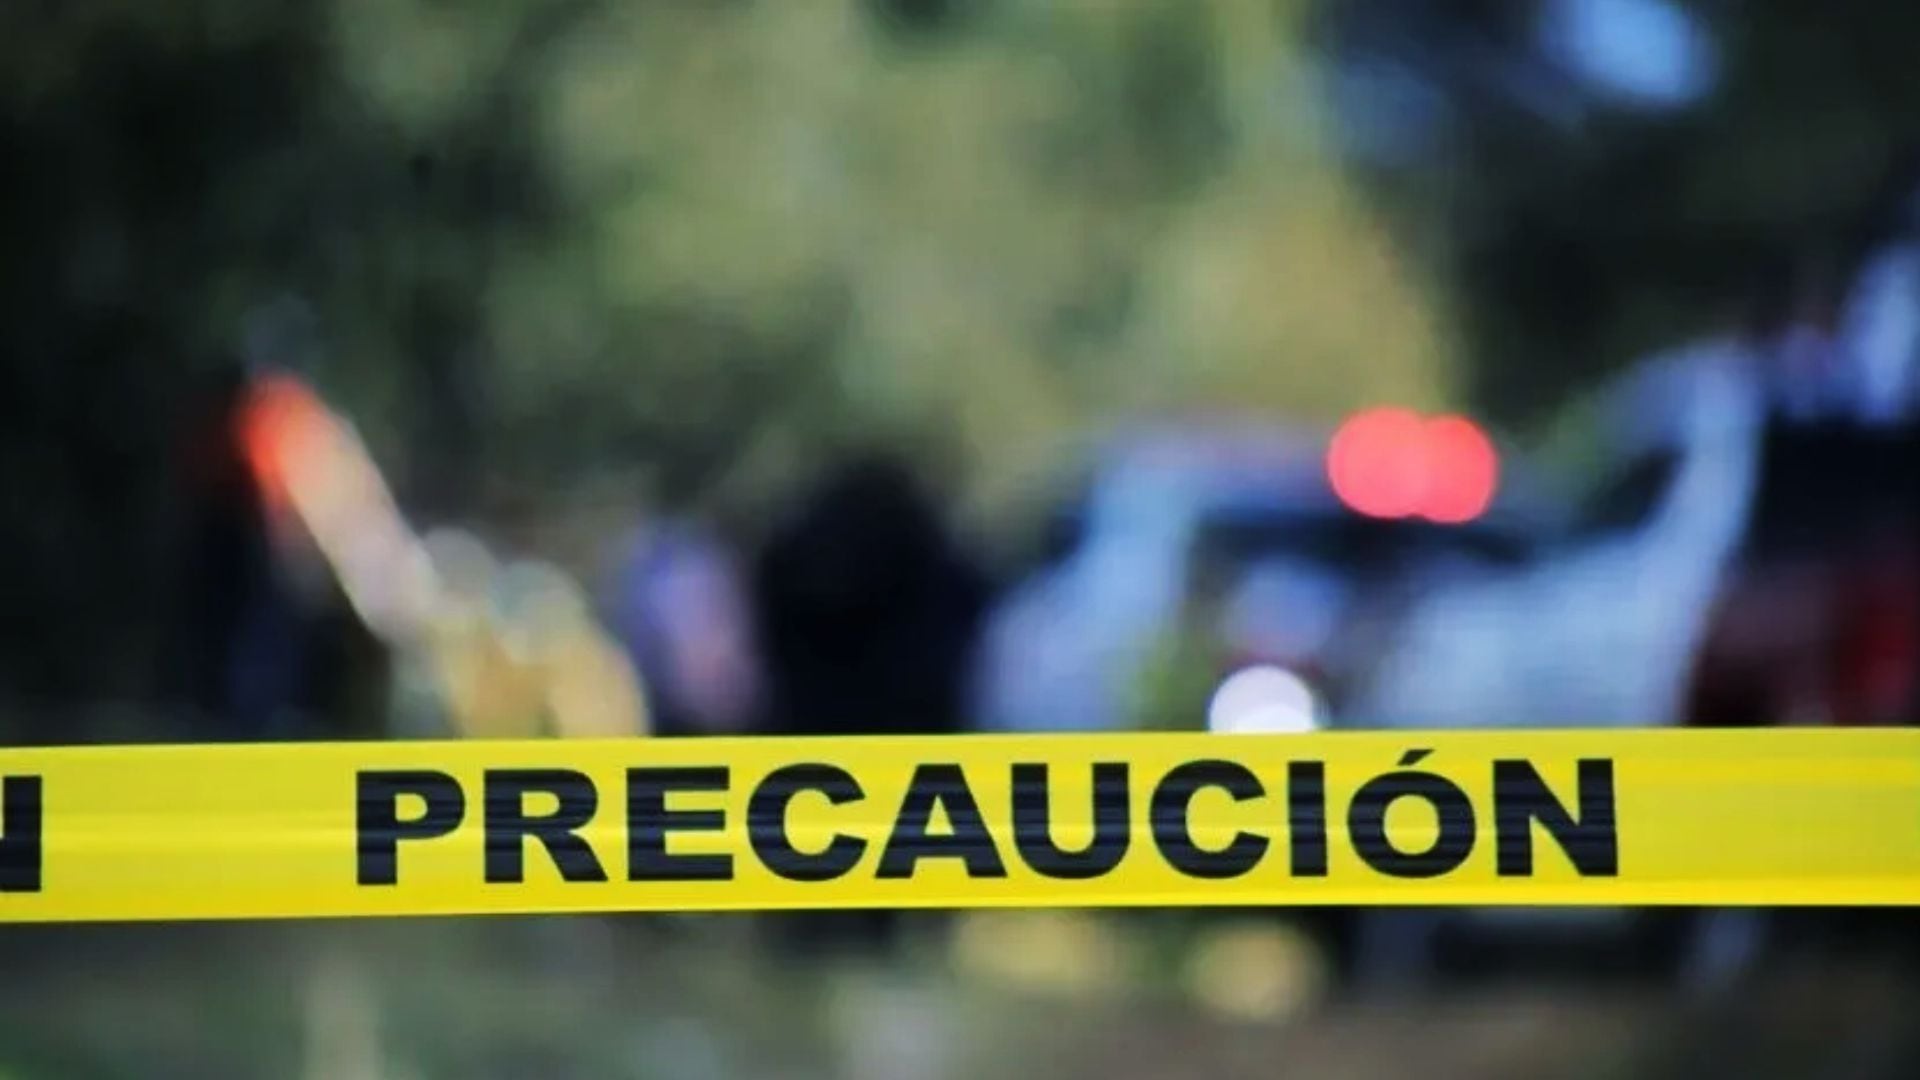 matan a 4 policías municipales durante enfrentamiento armado en celaya, guanajuato